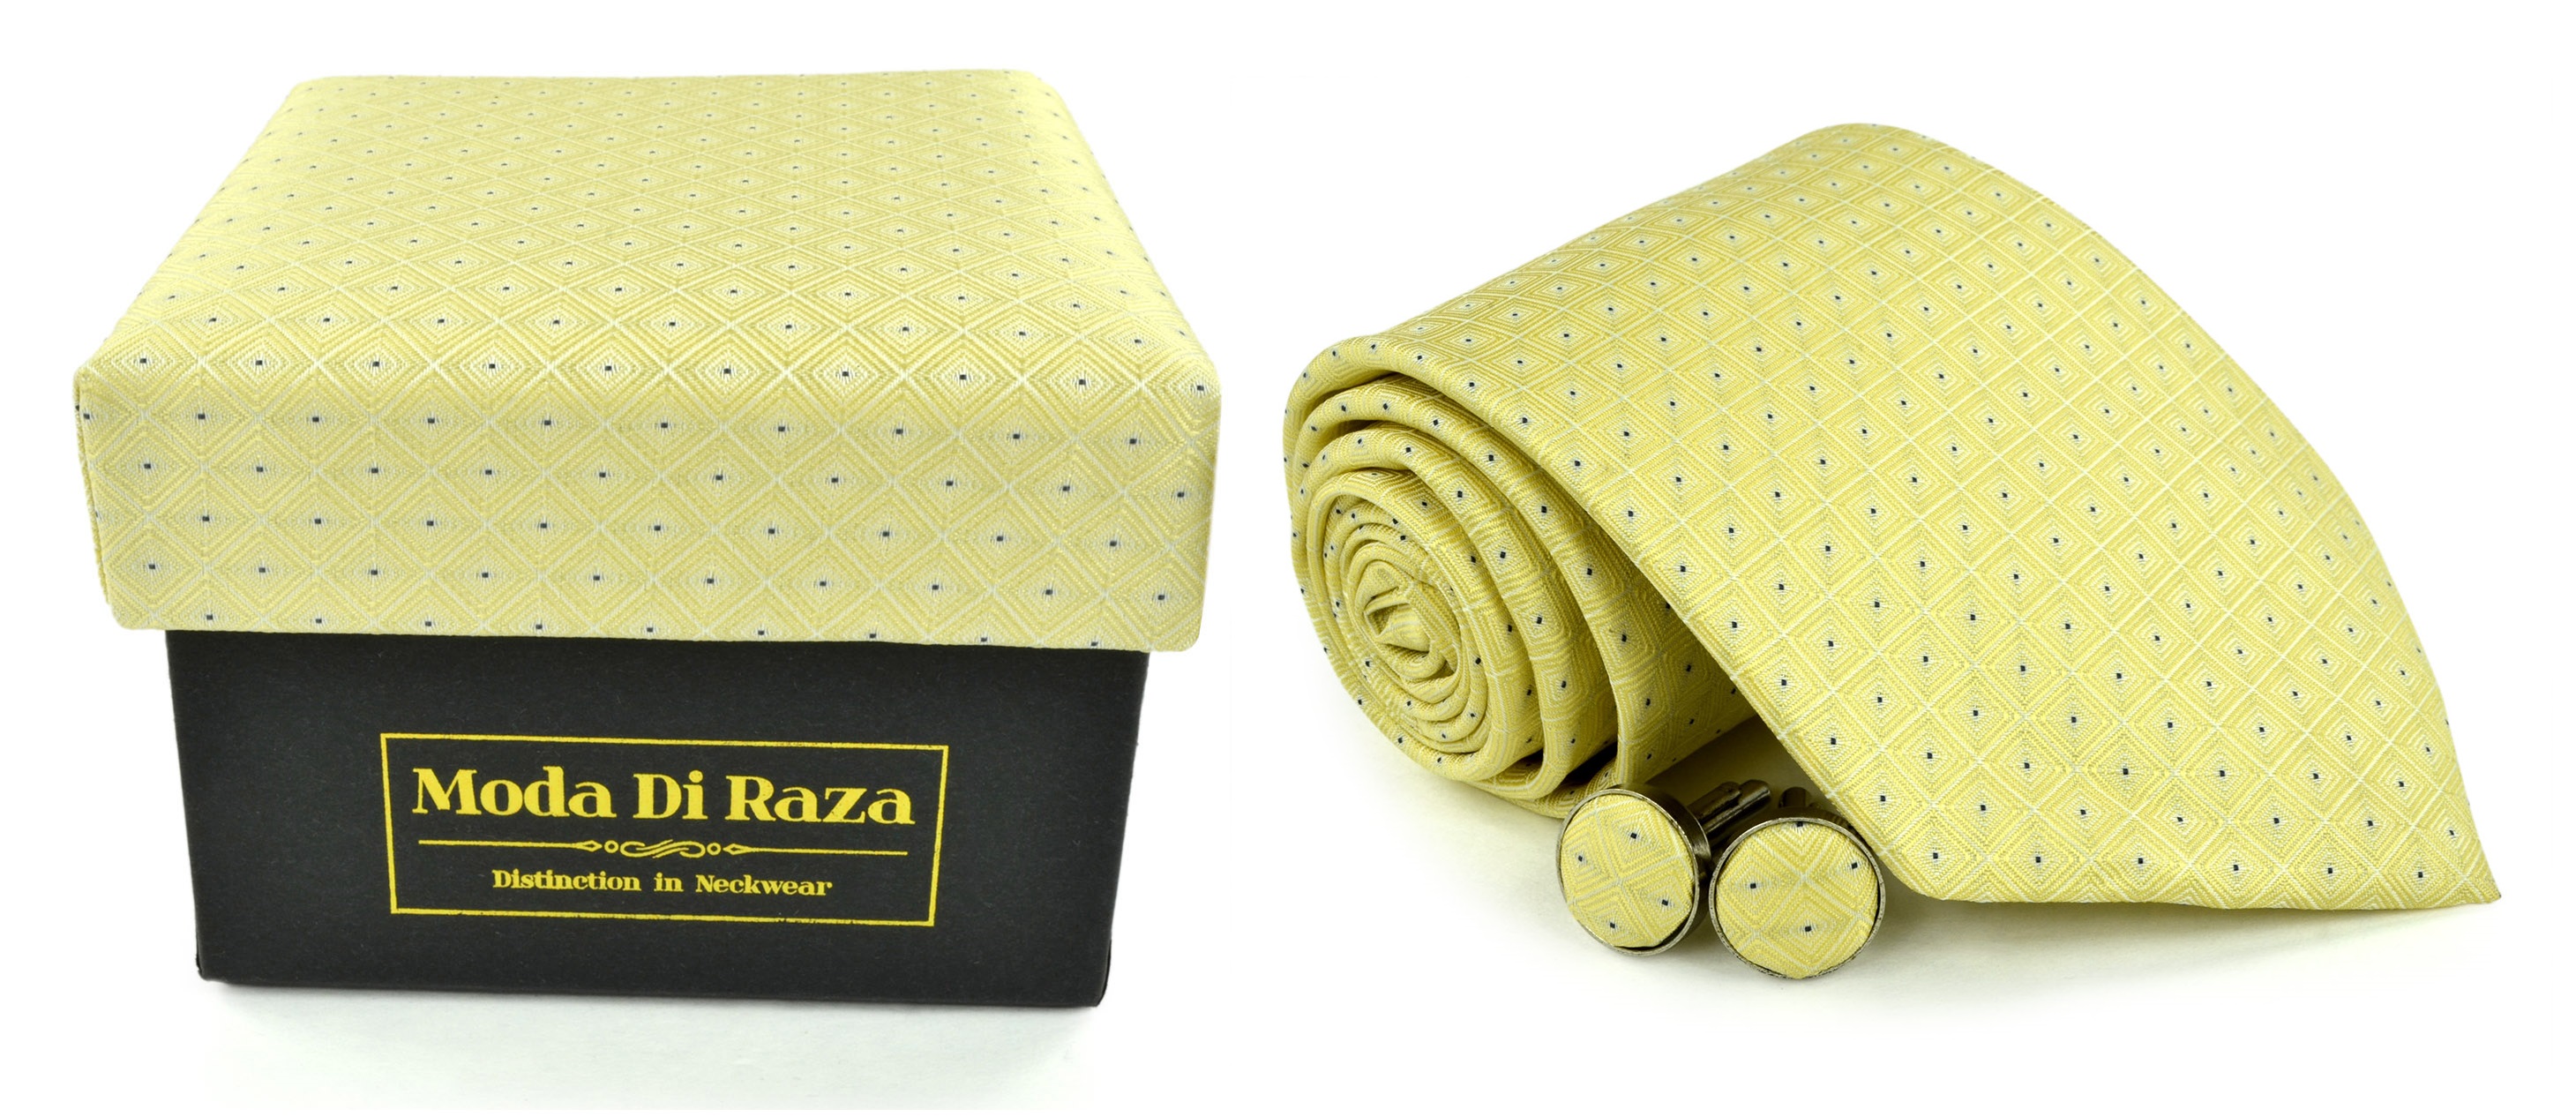 Moda Di Raza Men's NeckTie 3.0 With Cufflink n Gift Box Wedding Formal Events - Cream